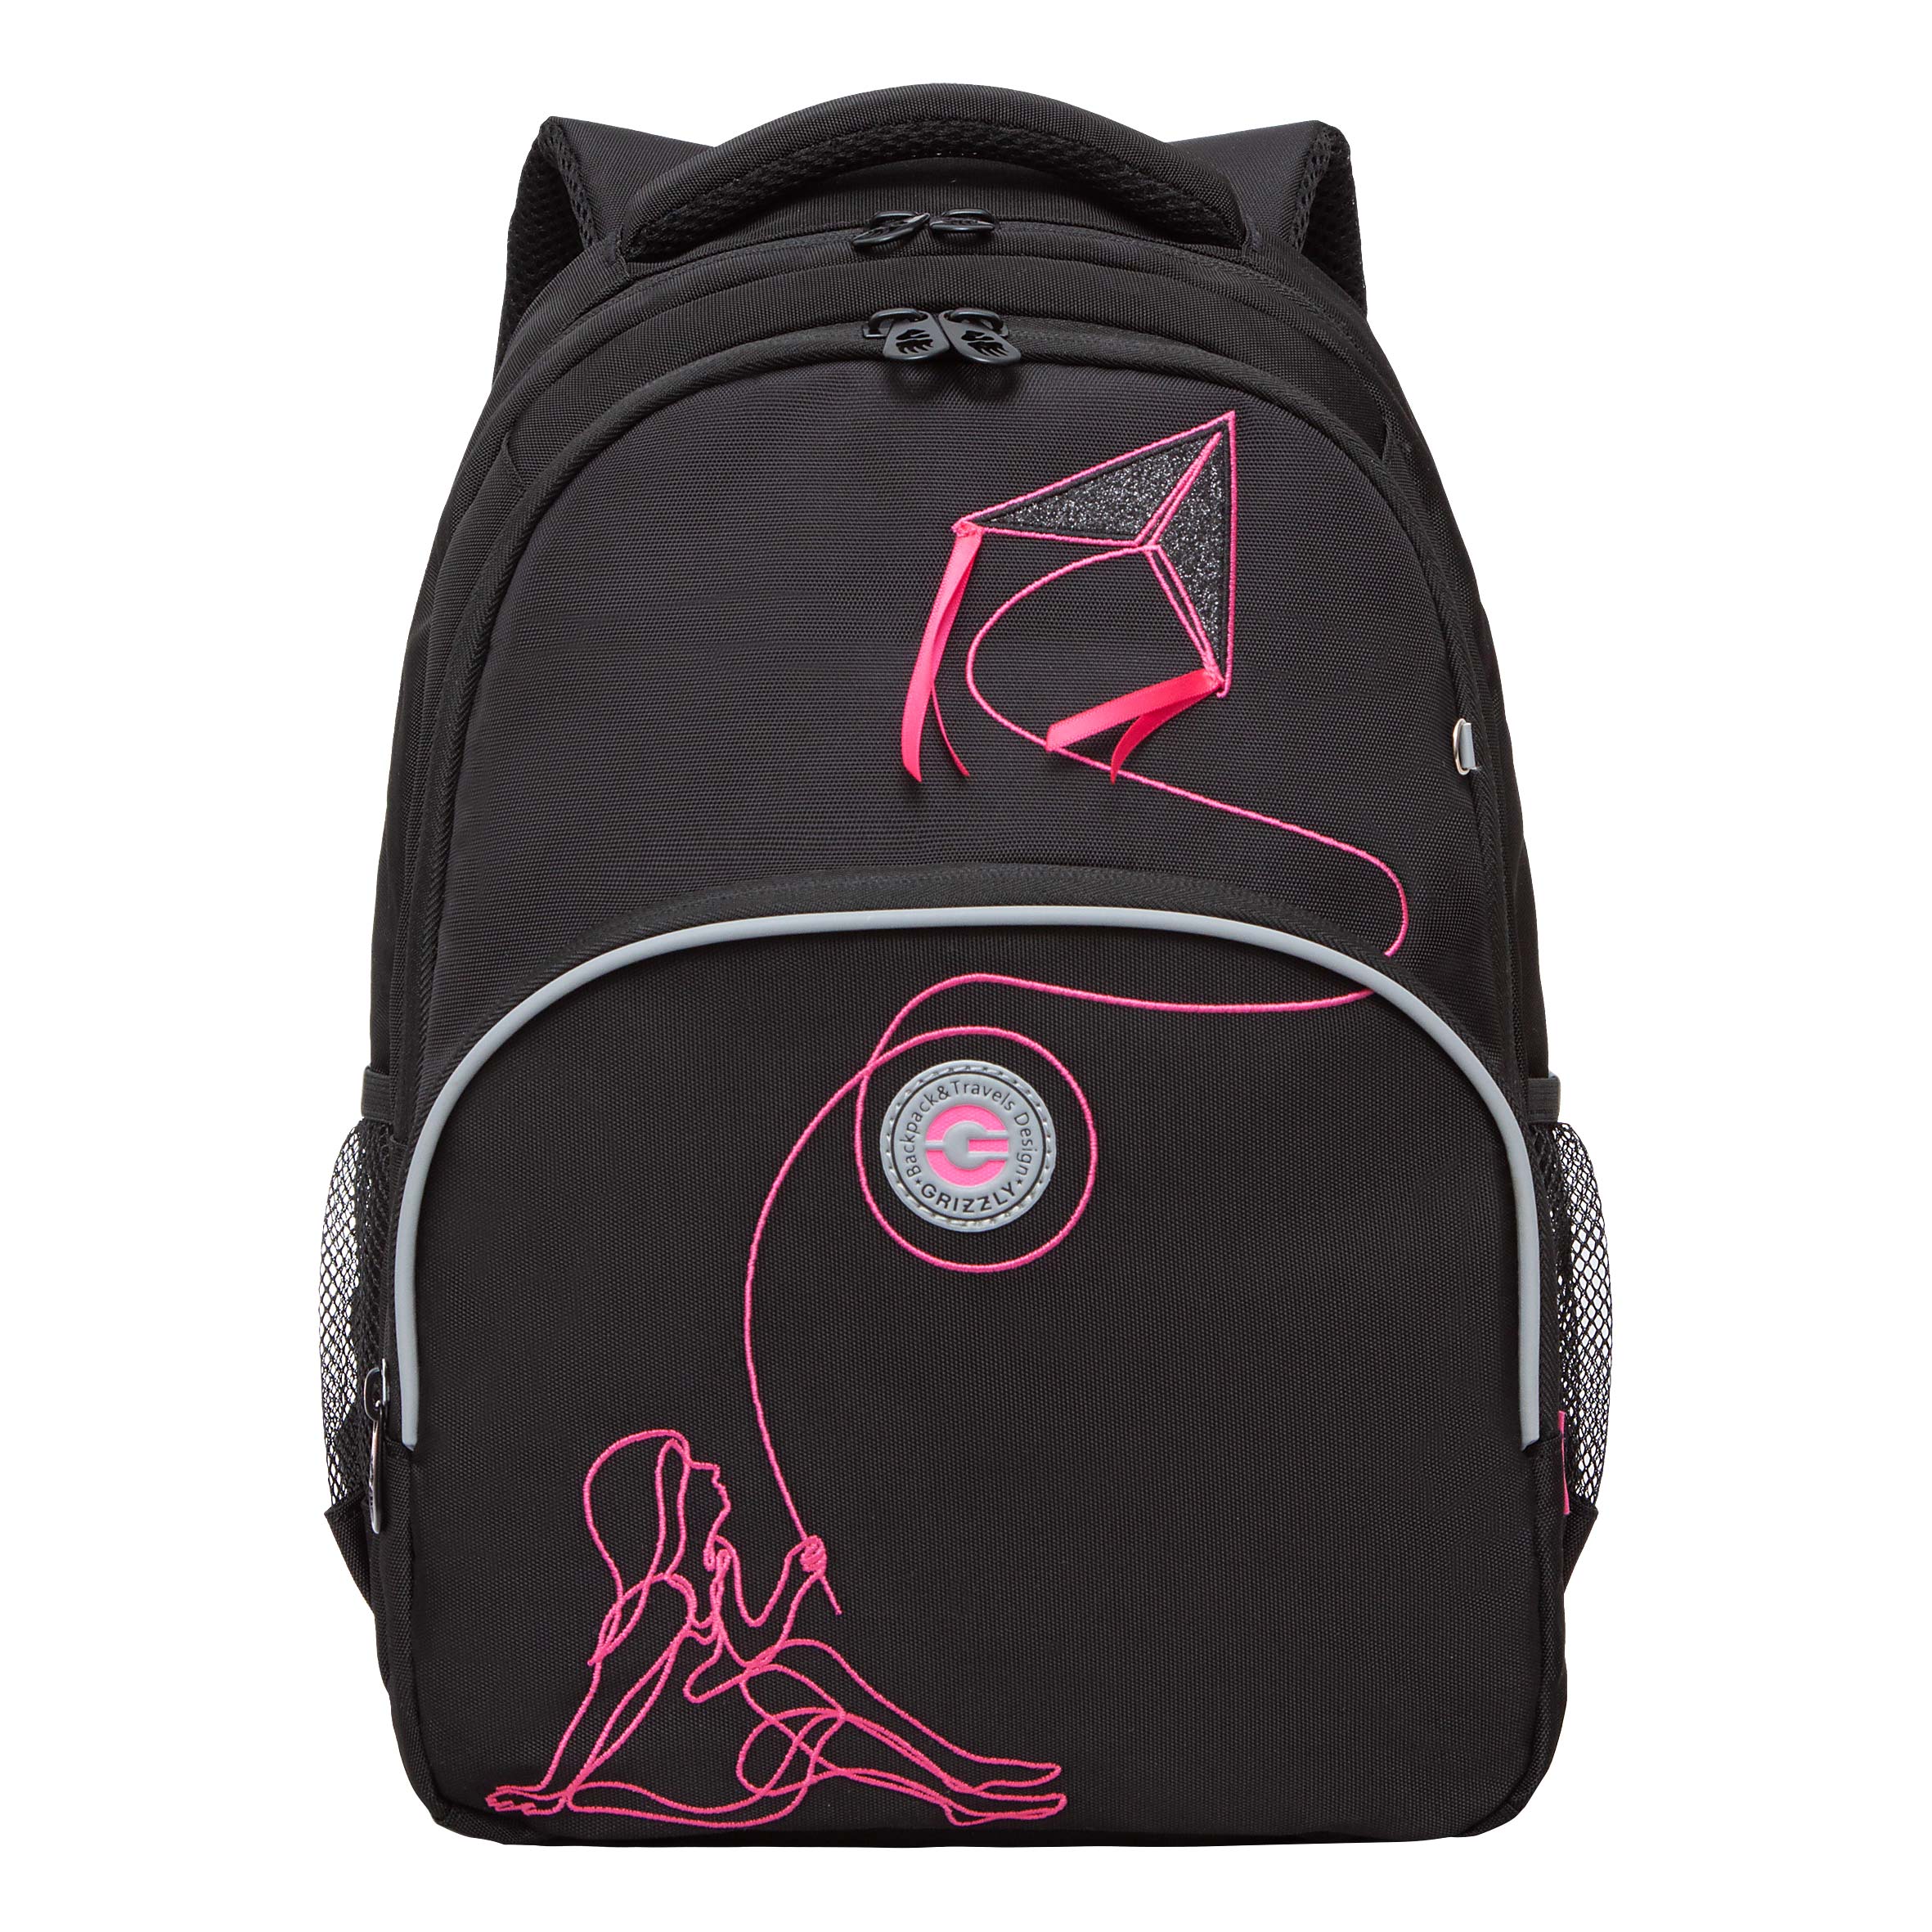 Рюкзак Grizzly школьный для девочки RG-360-8 1 черный - фуксия рюкзак школьный grizzly с карманом для ноутбука 13 2 отделения для девочки rg 466 2 2